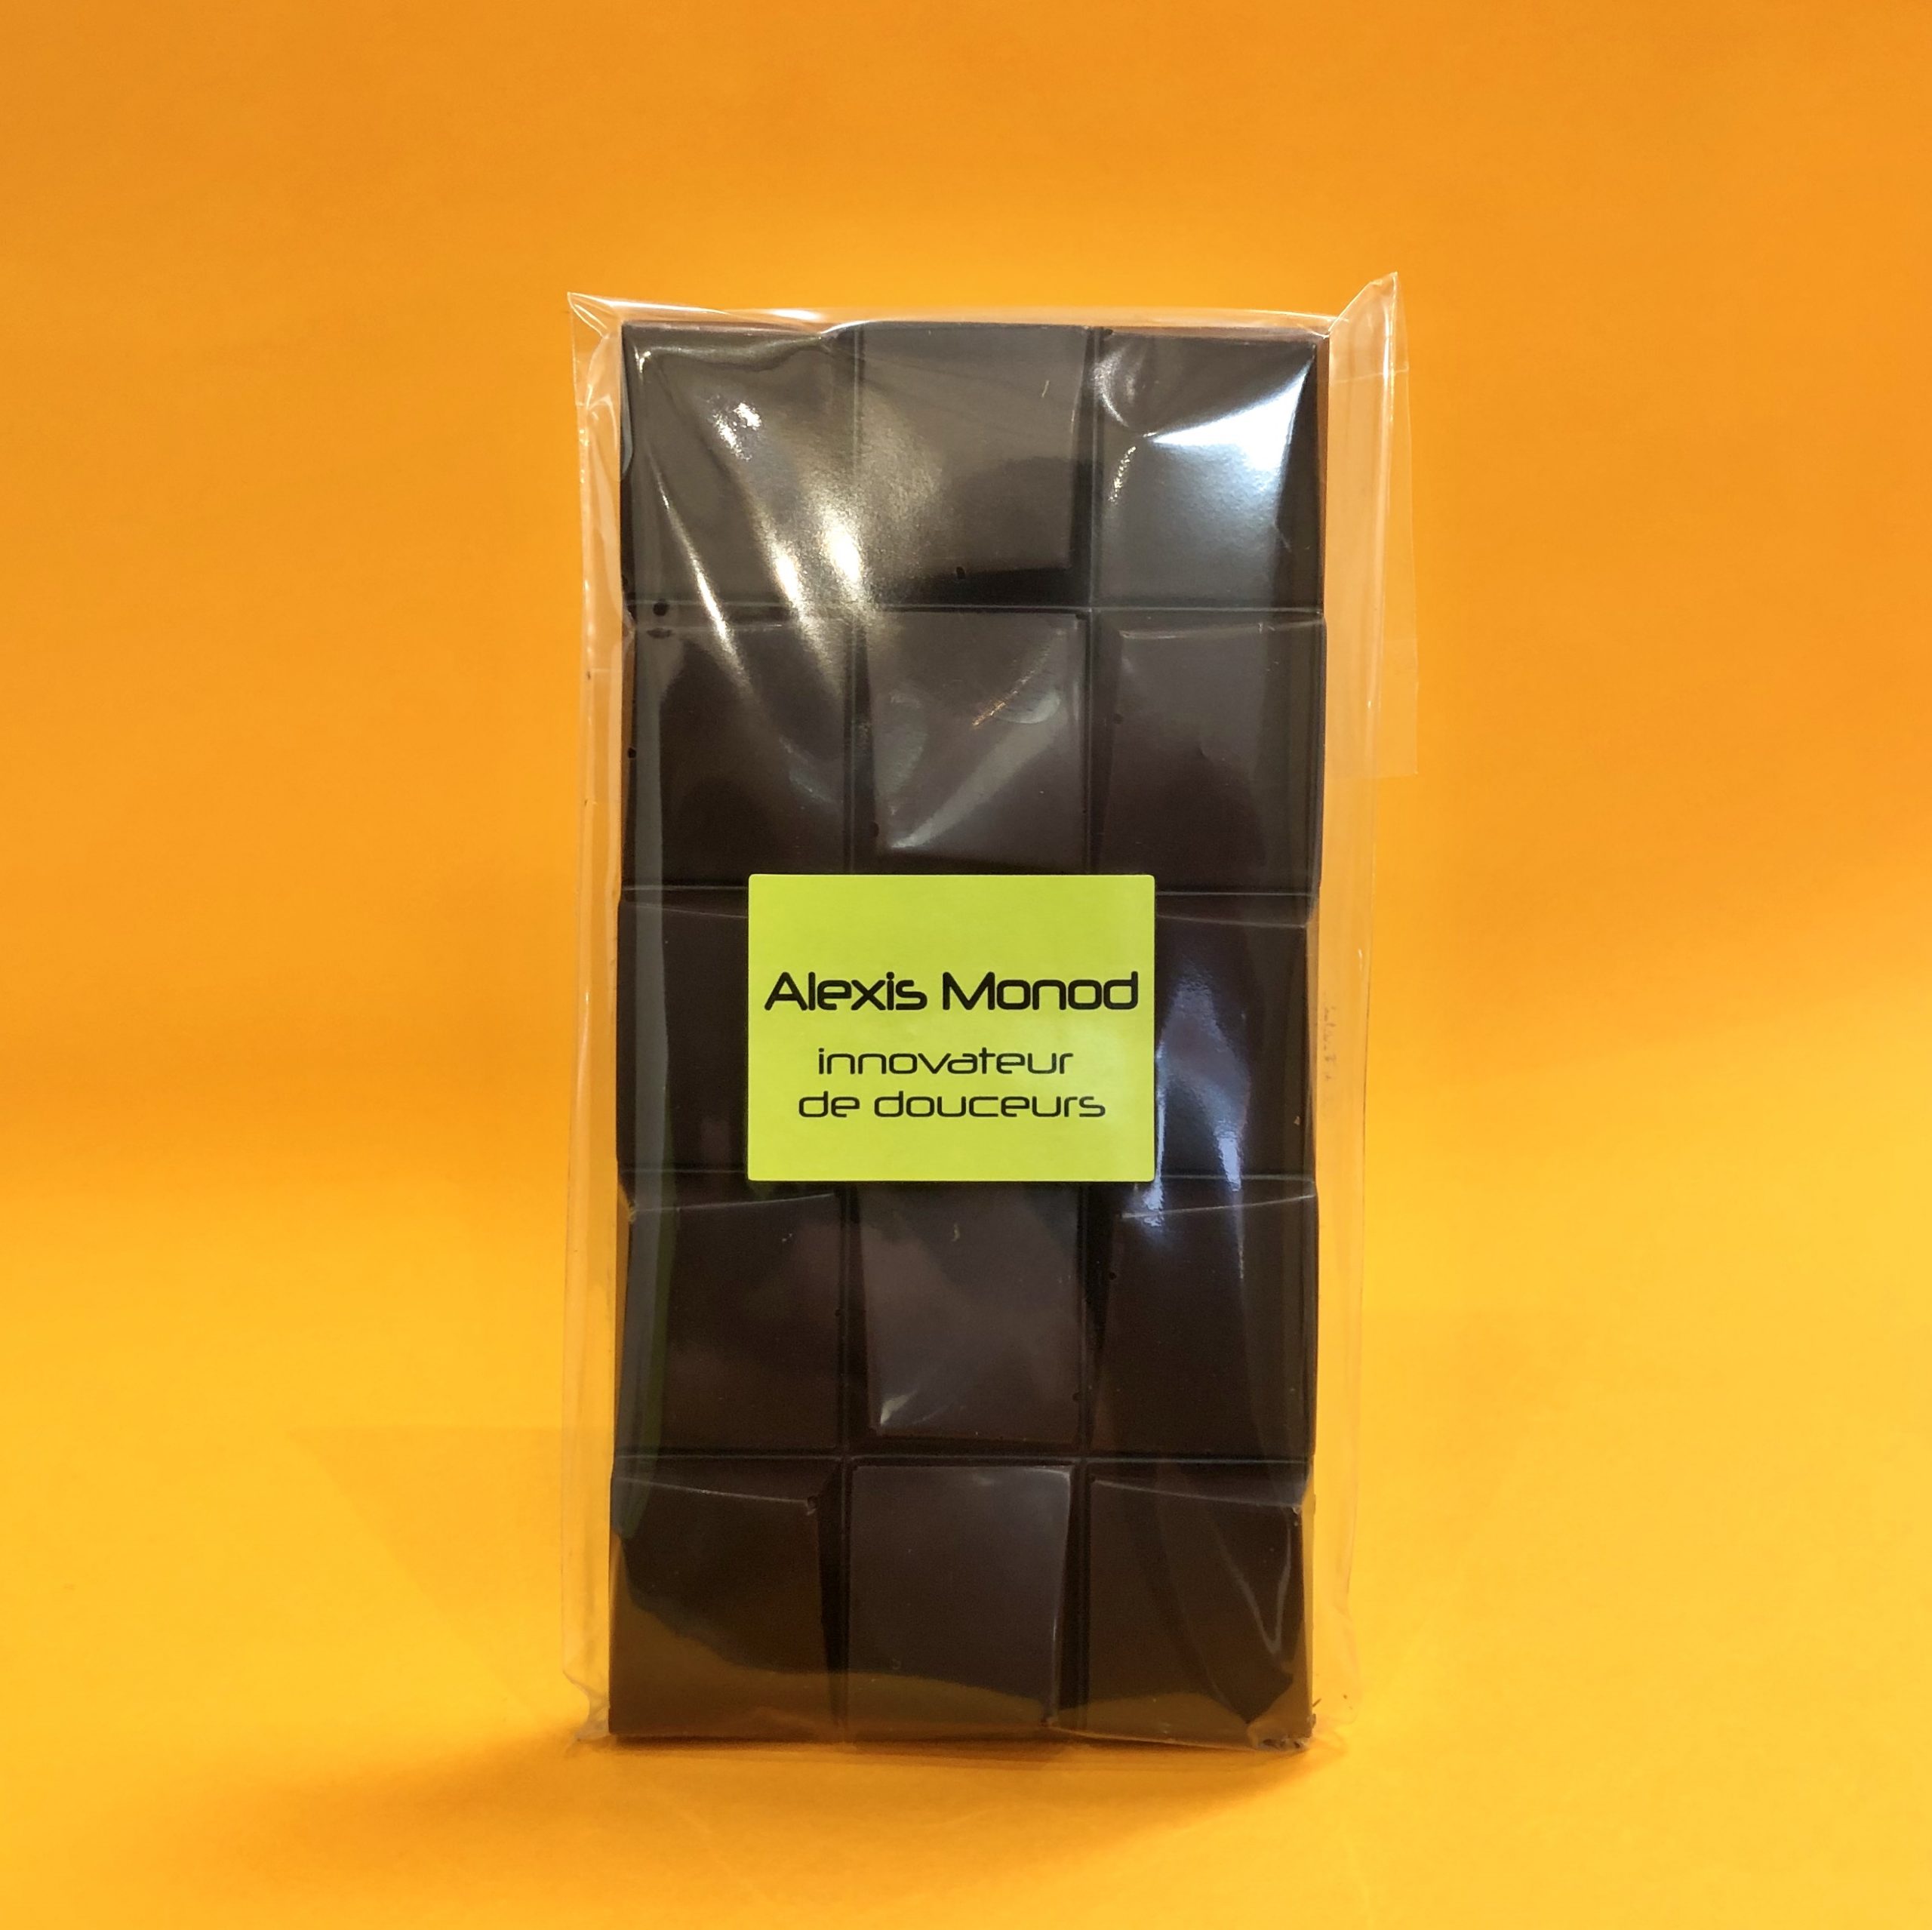 Tablette Chocolat Noir Sans Sucre